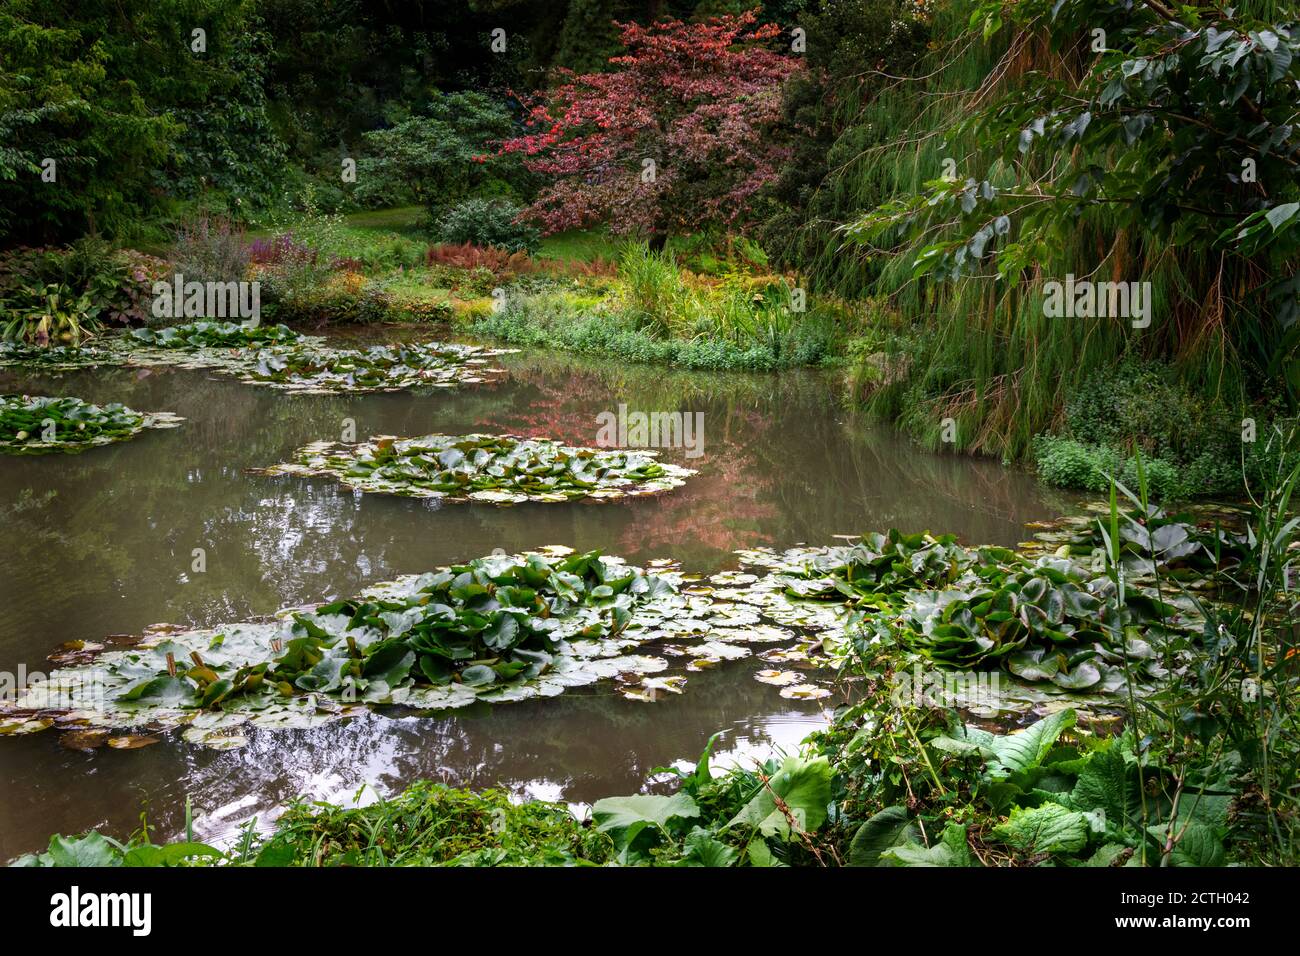 Seerosen blühen in einem kleinen See innerhalb eines Gartens. Stockfoto